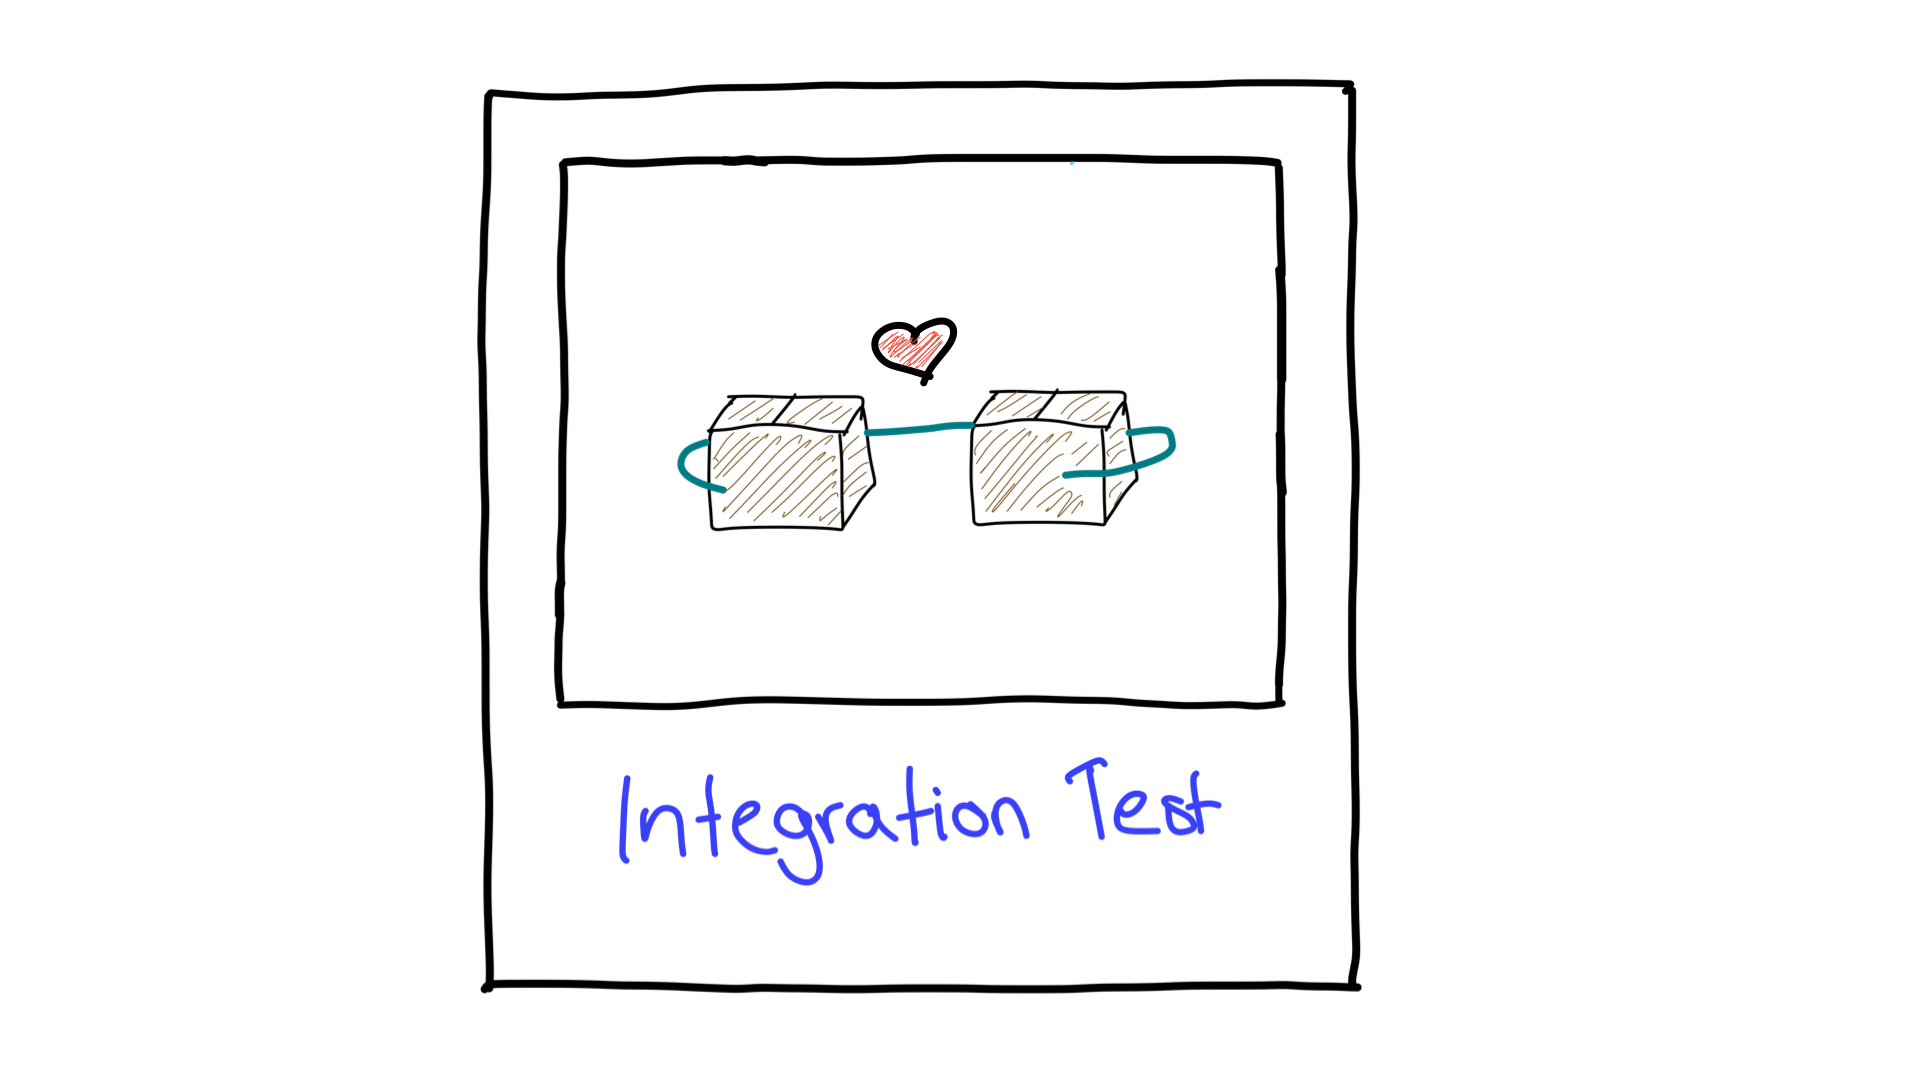 Uma representação simplificada do teste de integração mostrando como duas unidades trabalham juntas.